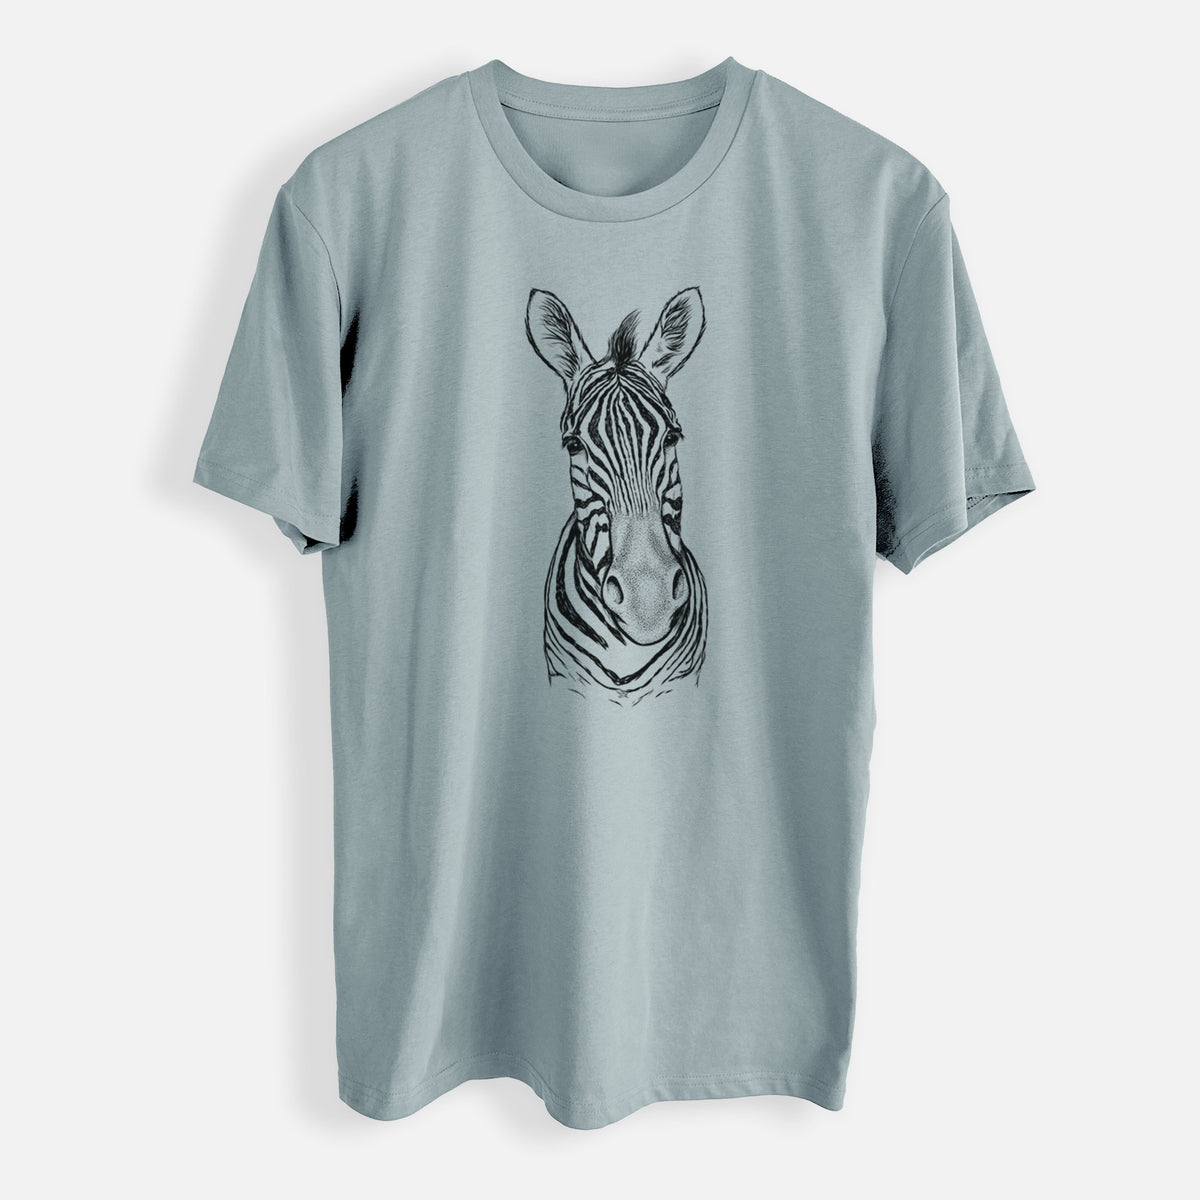 Damara Zebra - Equus quagga antiquorum - Mens Everyday Staple Tee